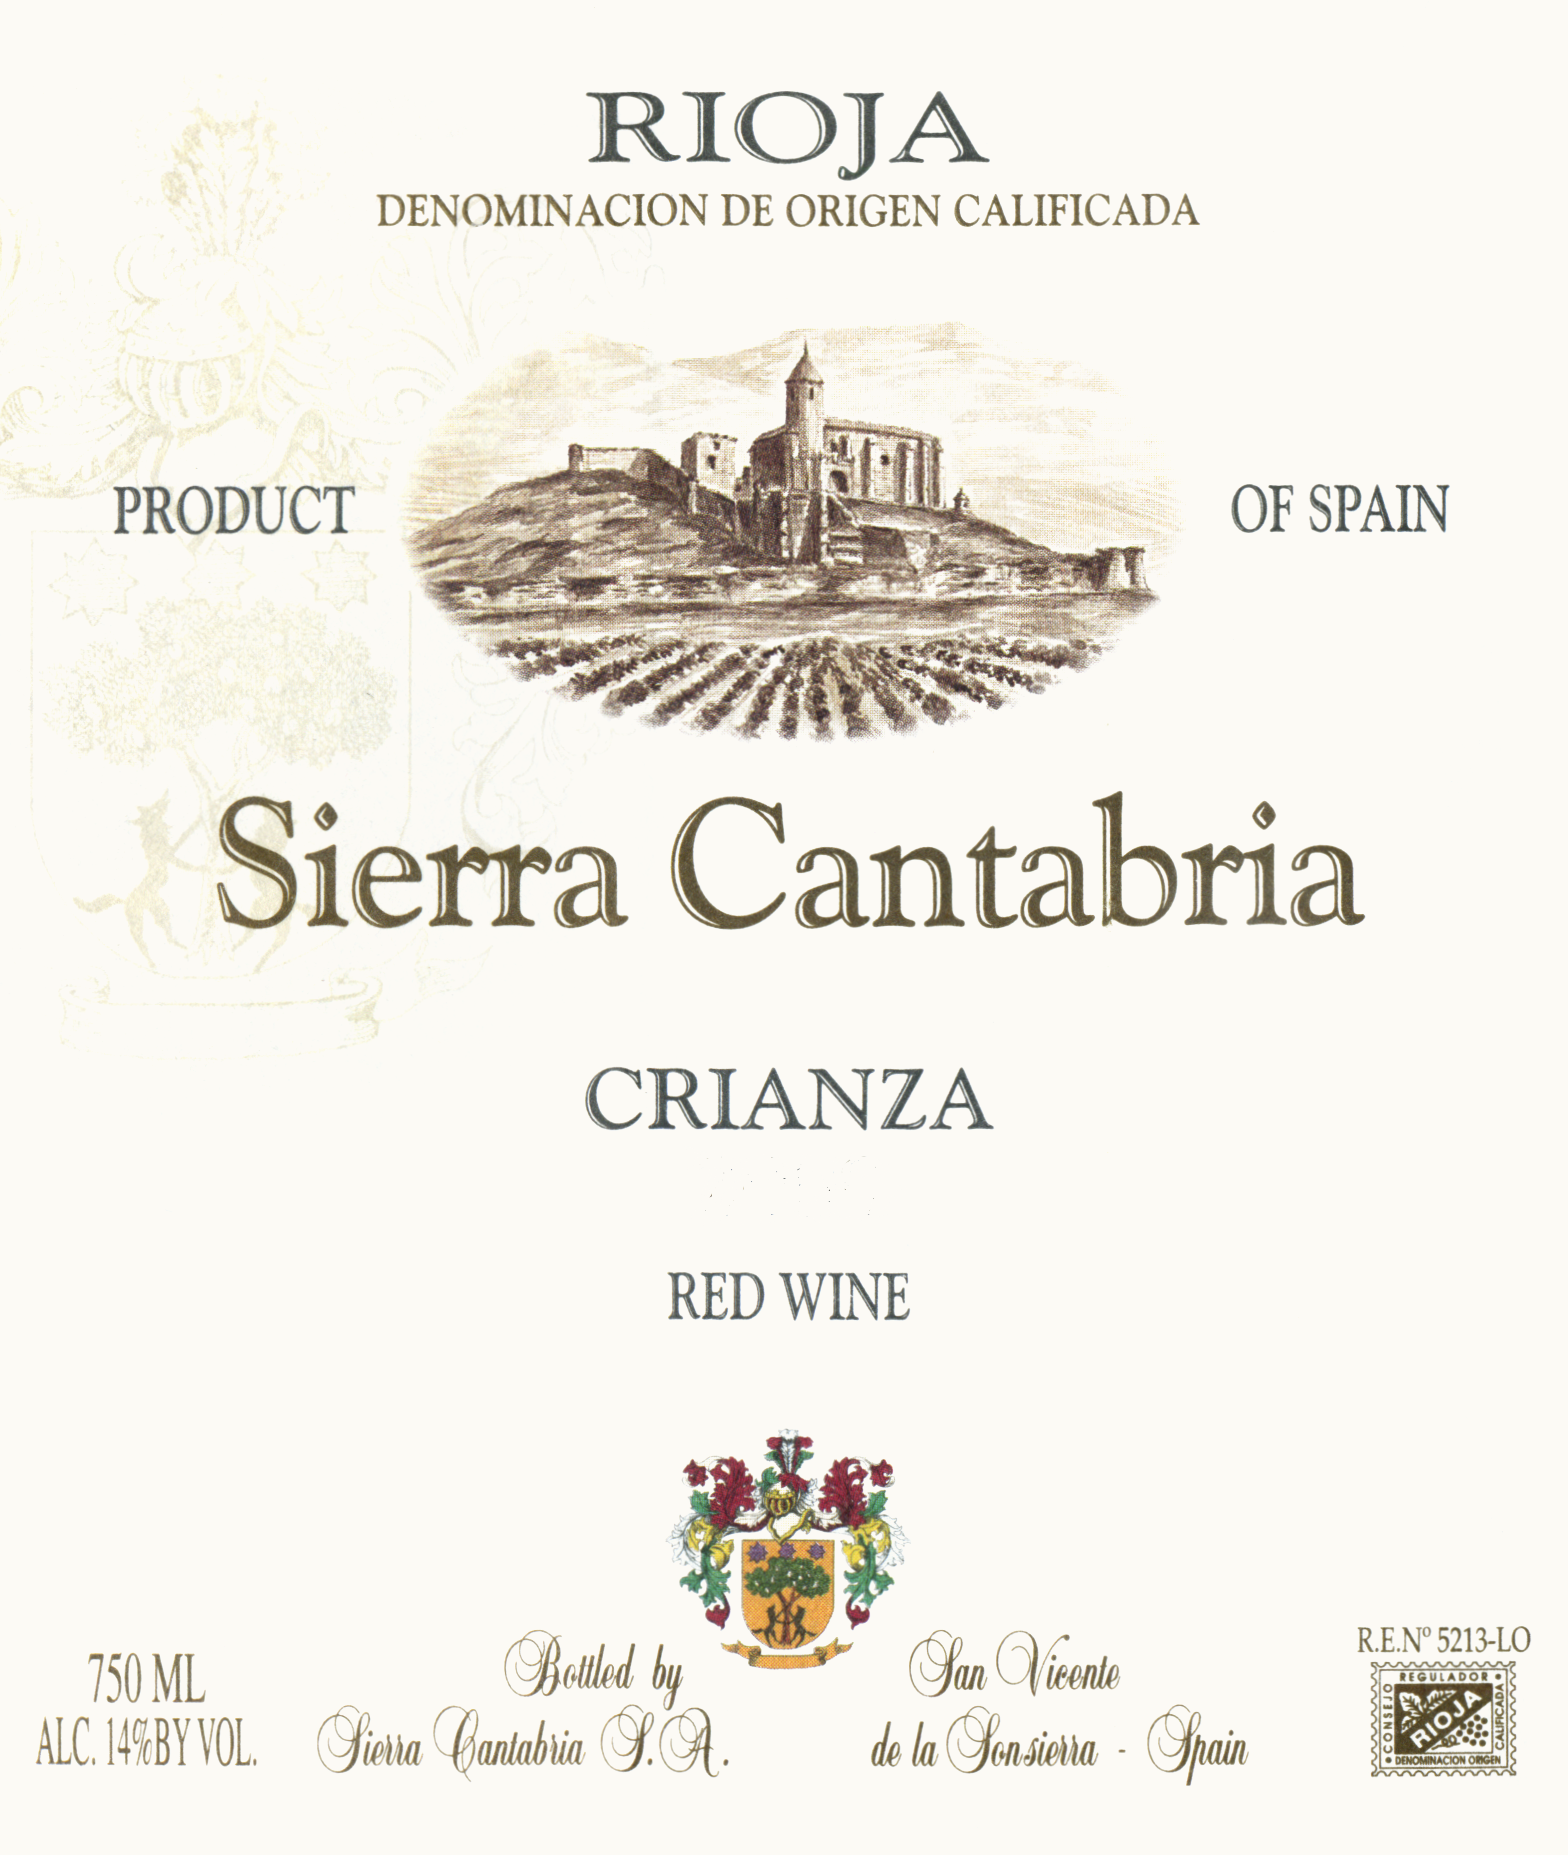 2019 Sierra Cantabria Rioja Crianza - click image for full description